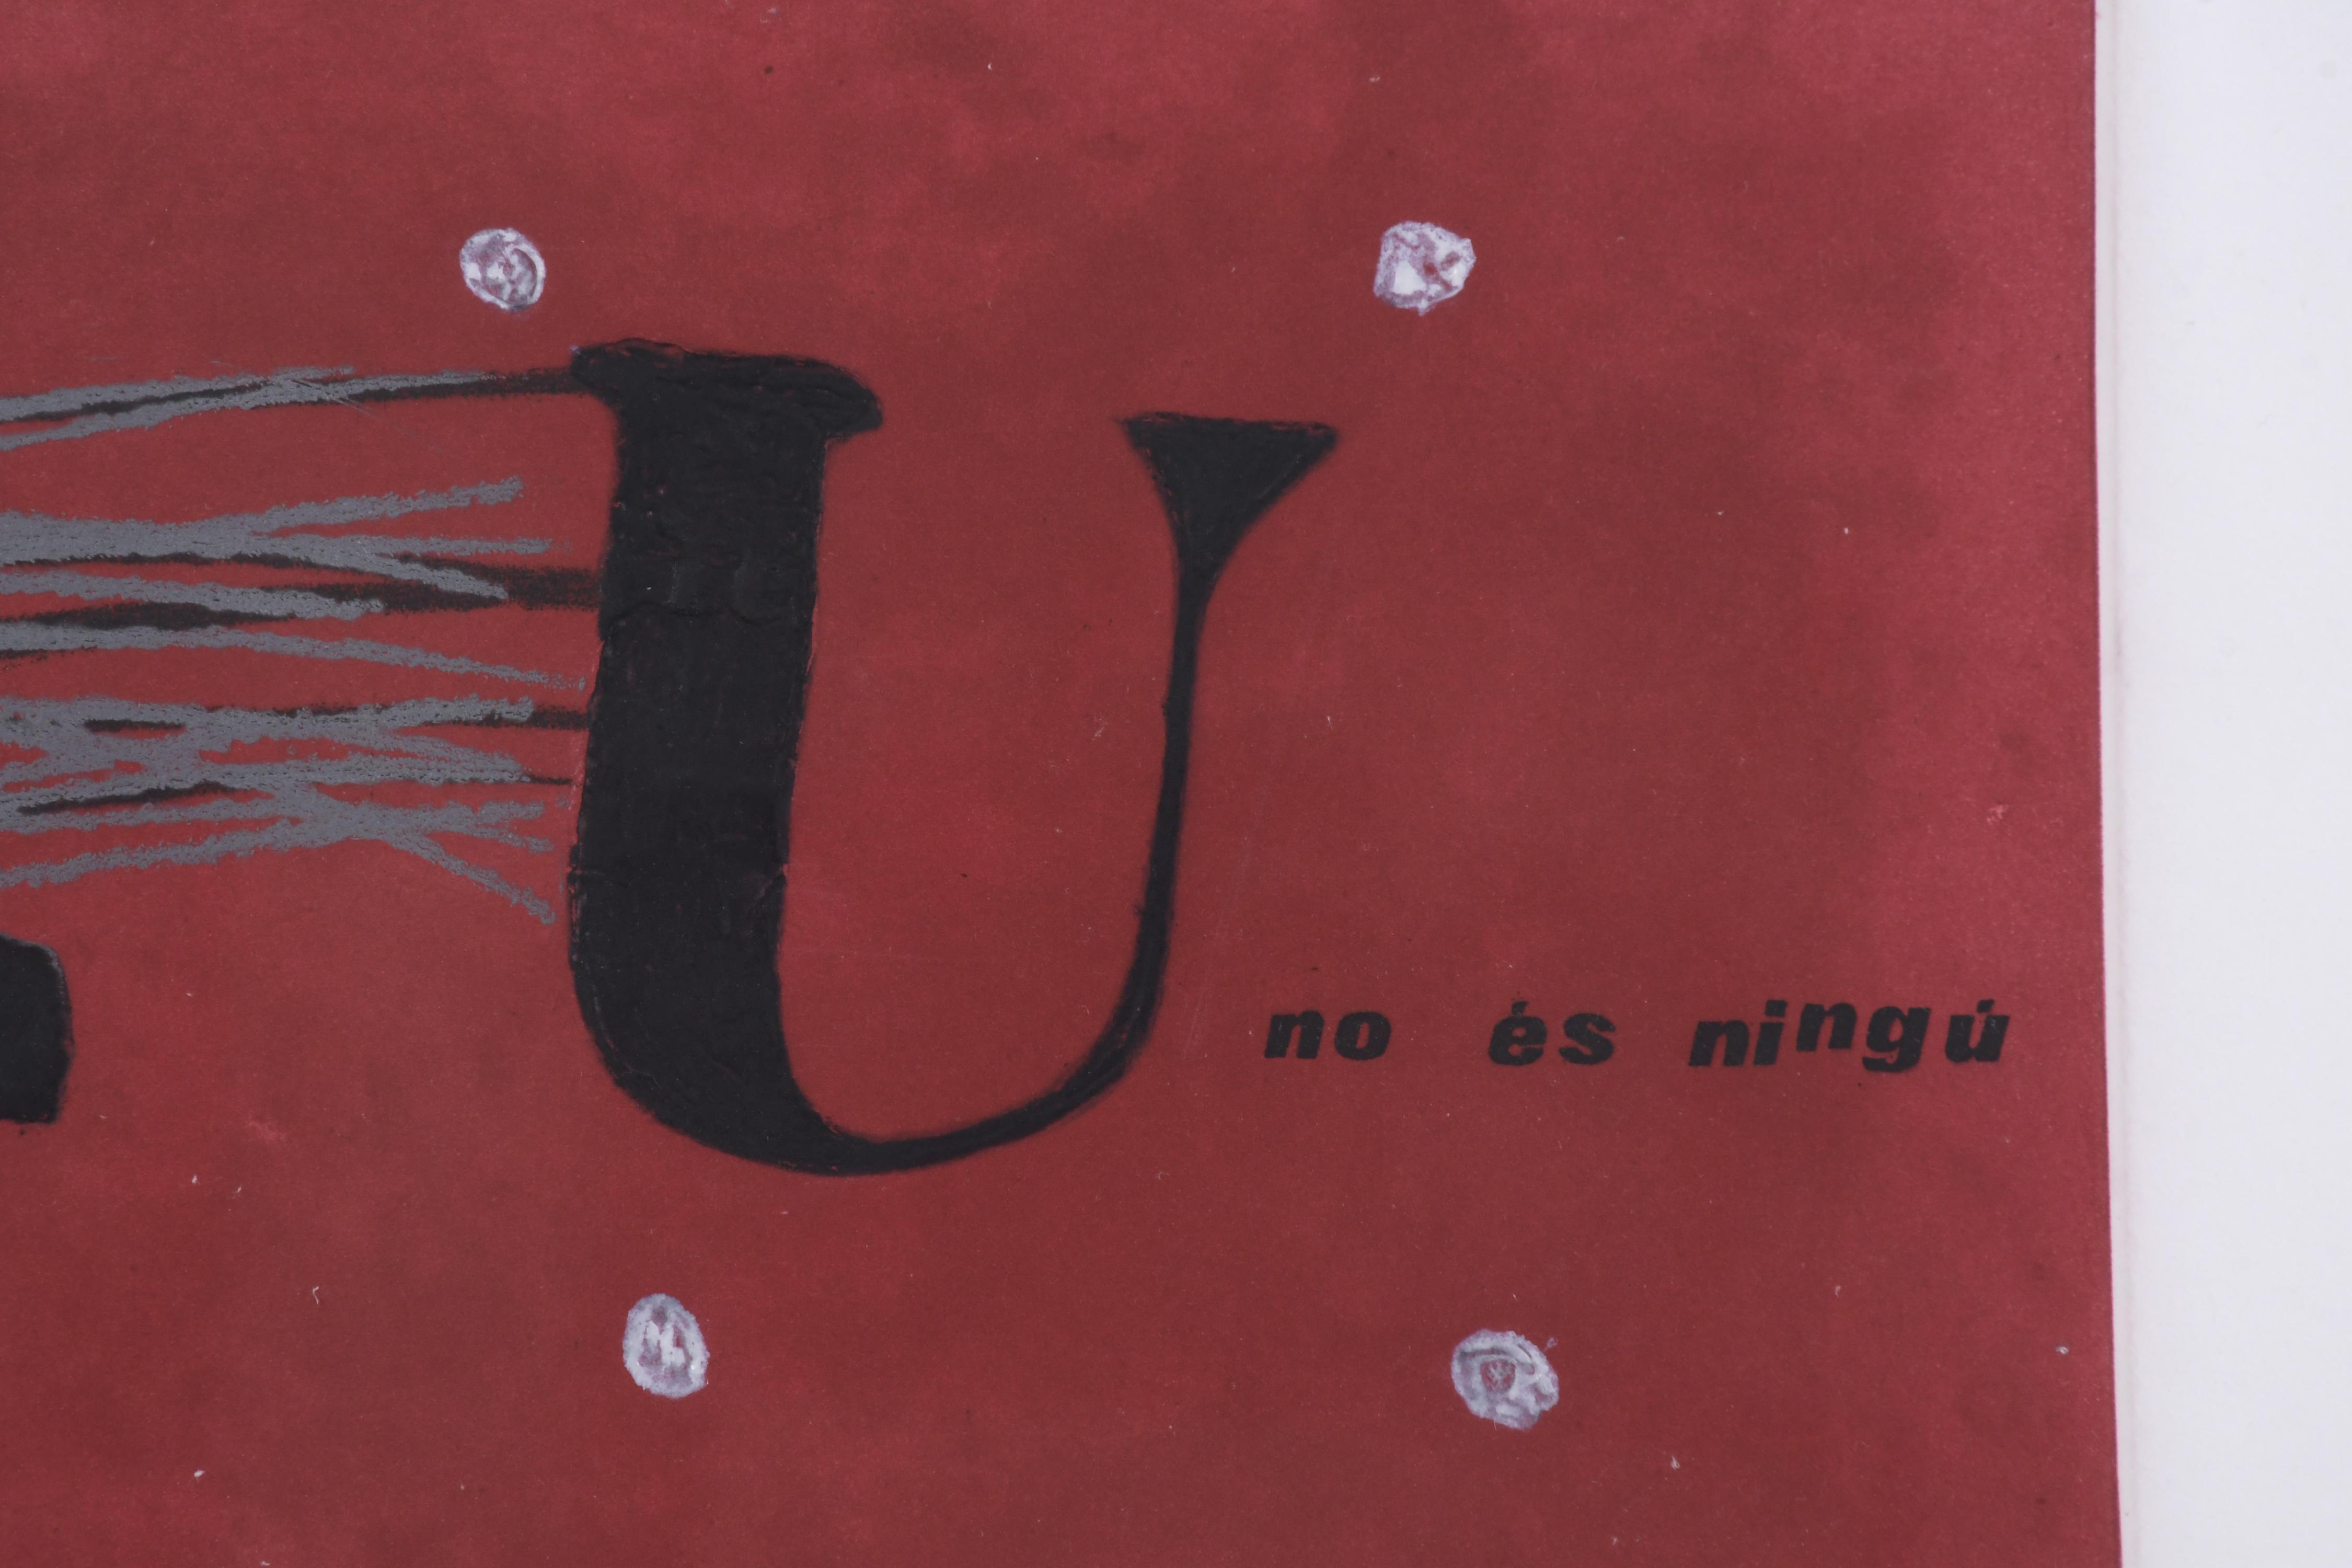 ANTONI TÀPIES (1923-2012). "U NO ES NINGU", 1979.